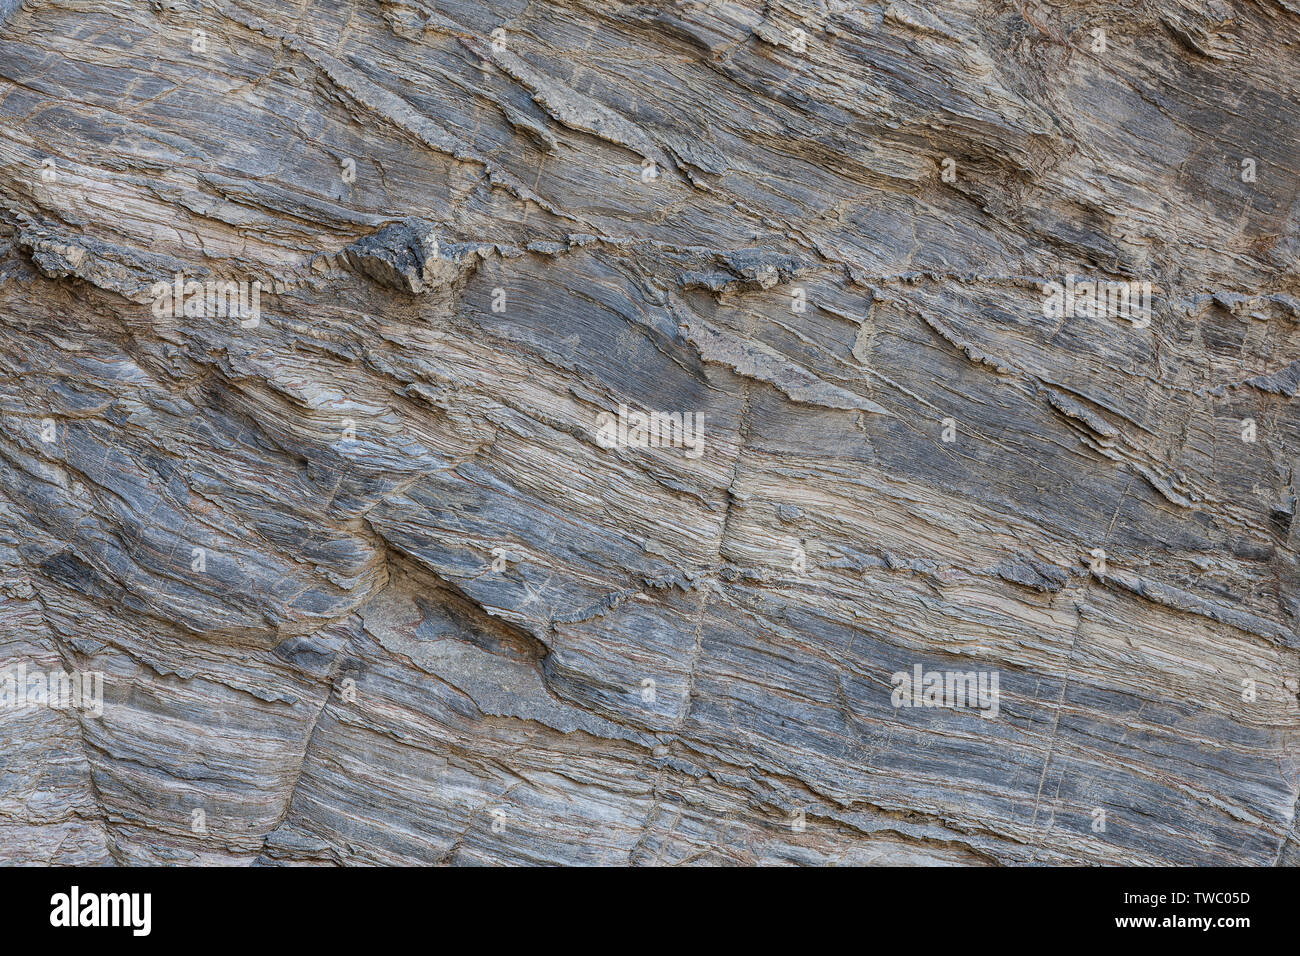 Naturstein Textur. Natürliche Beschaffenheit des Felsens Oberfläche, wo Sie die Zeilen in der langen Zeit gezeichnet sehen können. Kann als Hintergrund verwendet werden. Stockfoto